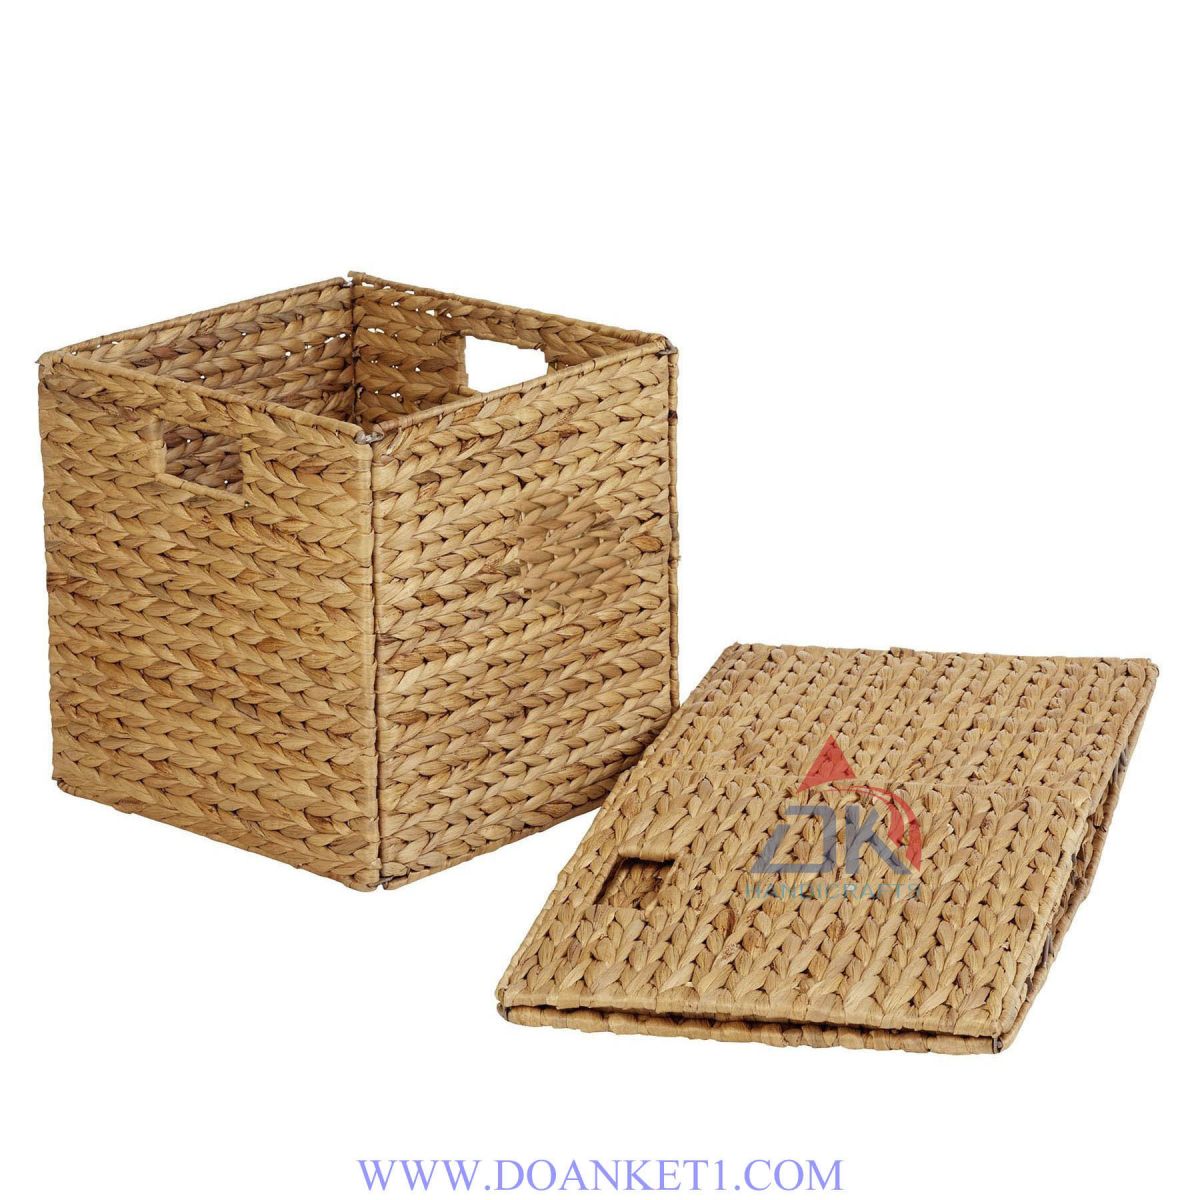 Water Hyacinth Storage Basket # DK385